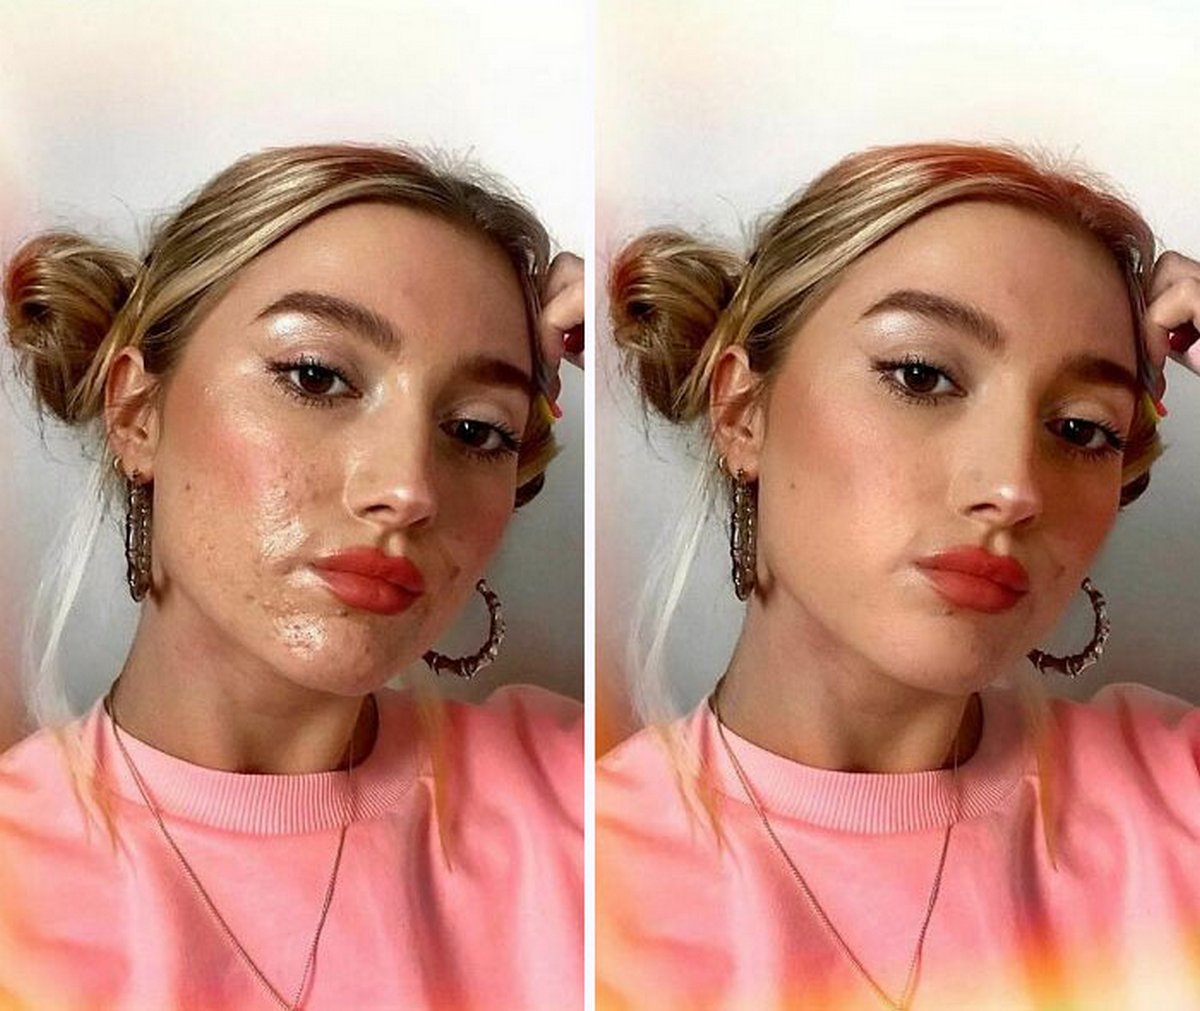 Ces femmes ont participé au défi #FilterDrop sur Instagram et ont montré leur visage sans filtre pour lutter contre les publicités de beauté retouchées